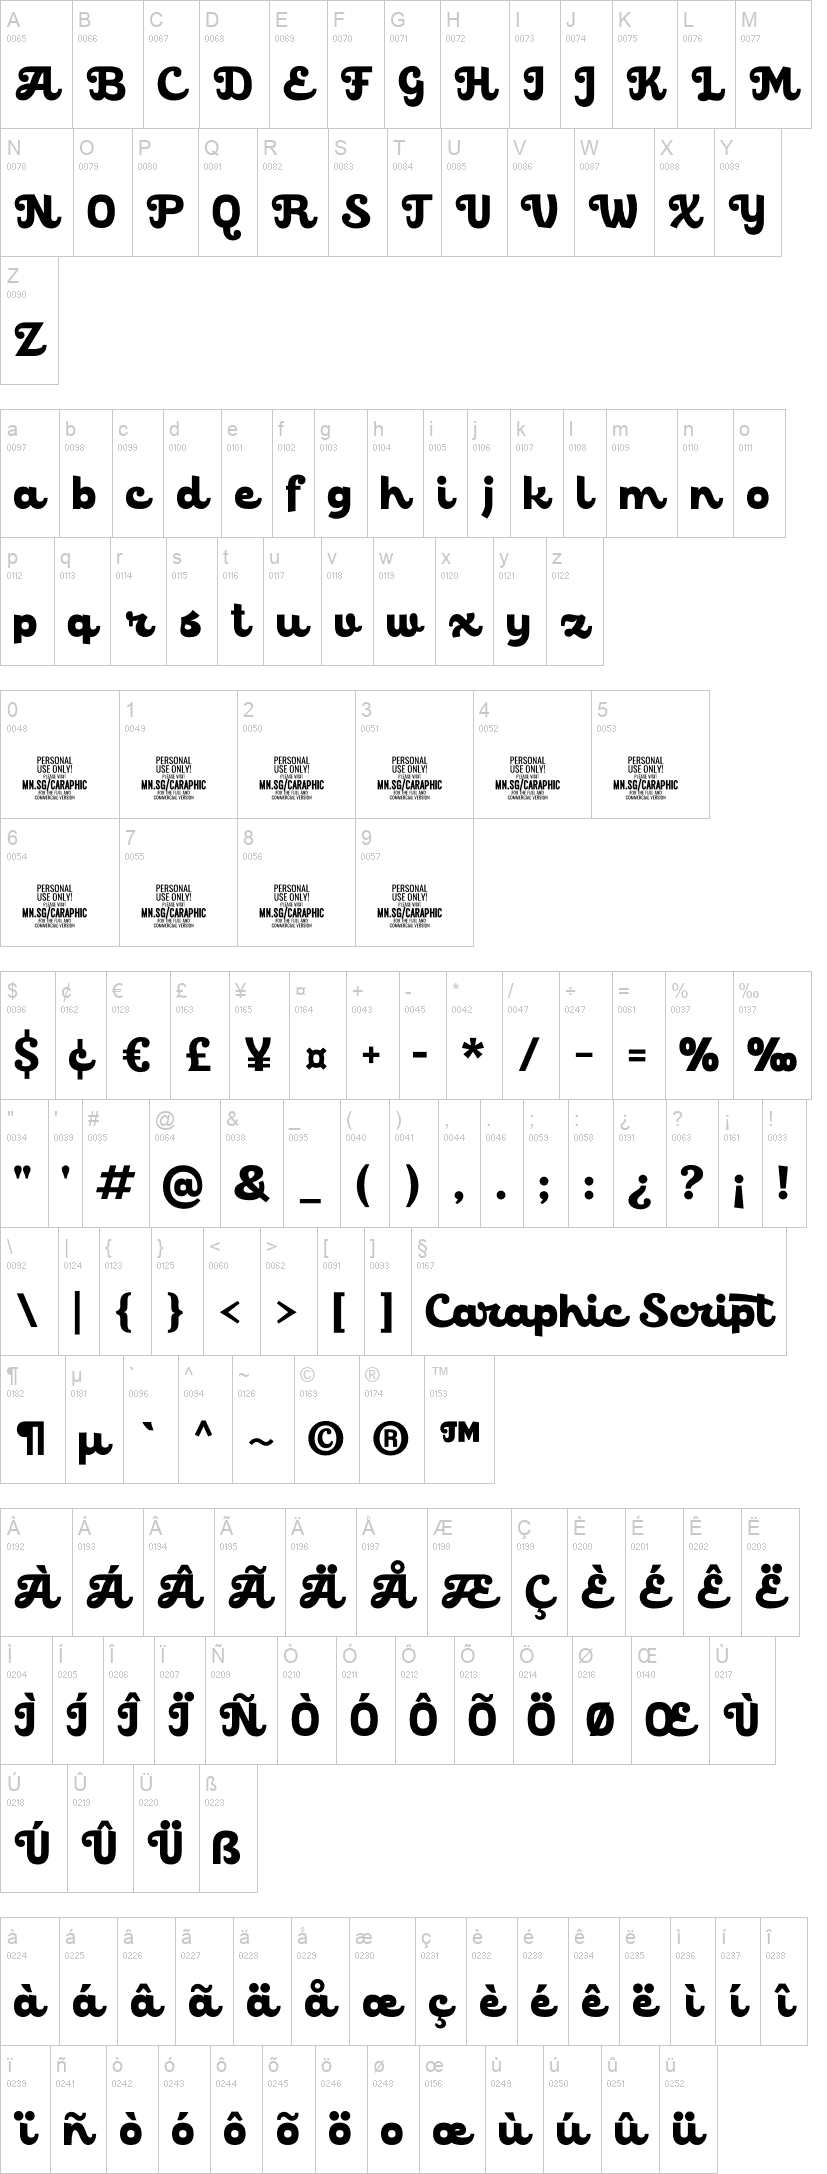 Caraphic Script